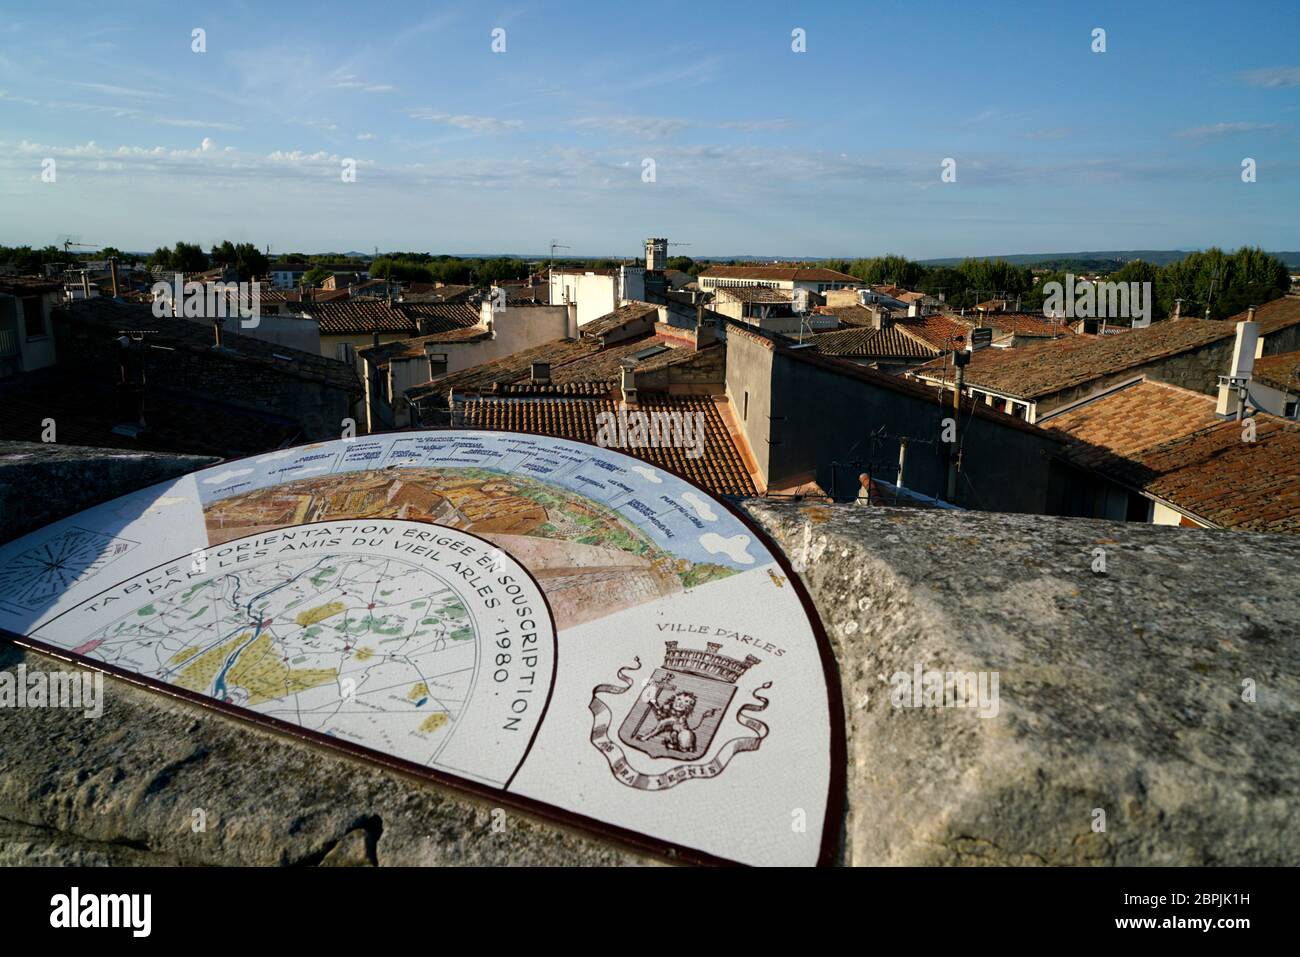 La carte d'orientation sur un mur en pierre donne sur la ville d'Arles.Bouches-du-rhône.Alpes-Côte d'Azur.France Banque D'Images